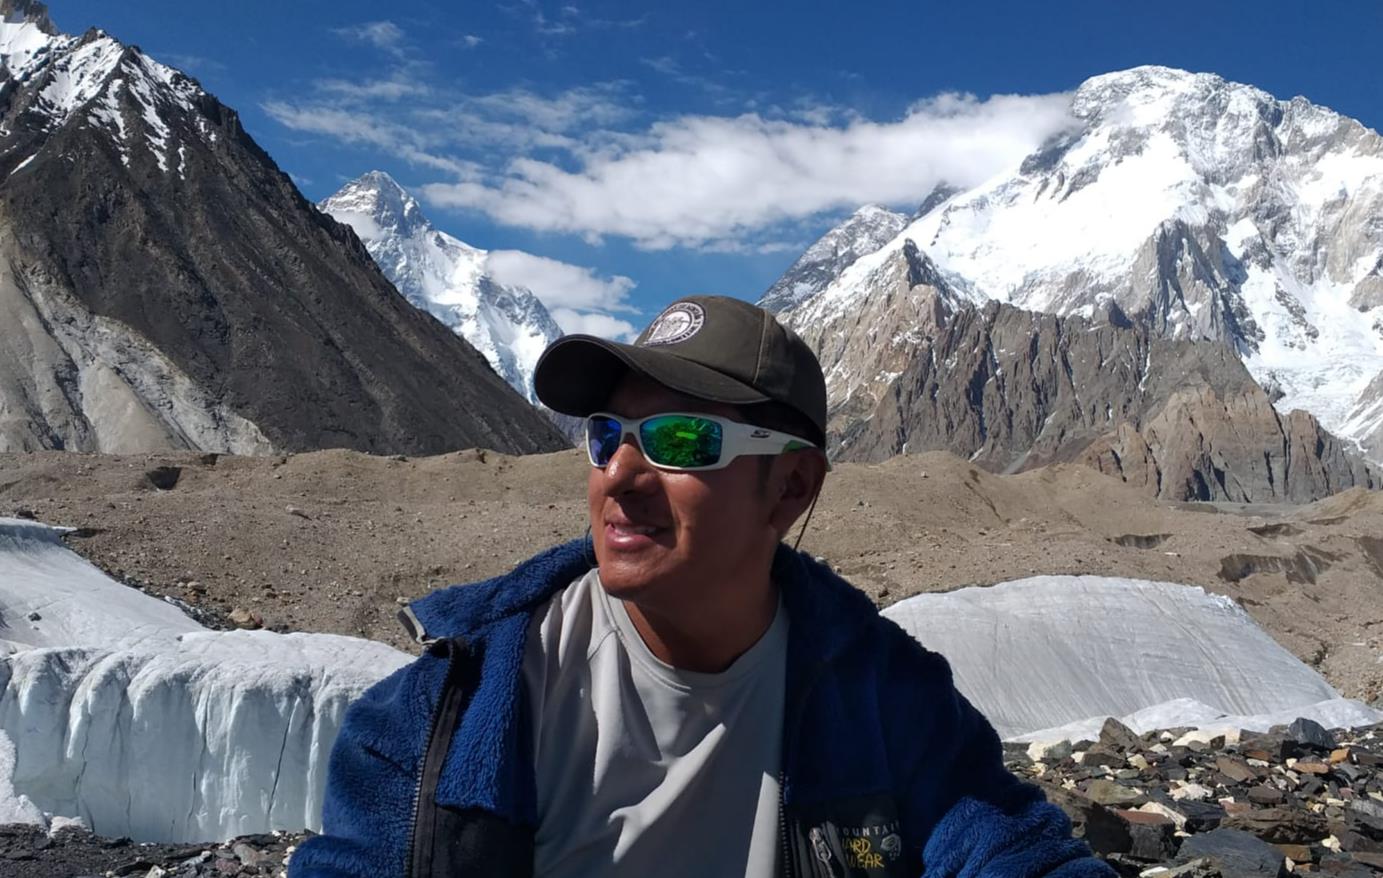 “C’est un nouveau rêve que je réalise” : Hugo Ayaviri achève son expédition pakistanaise